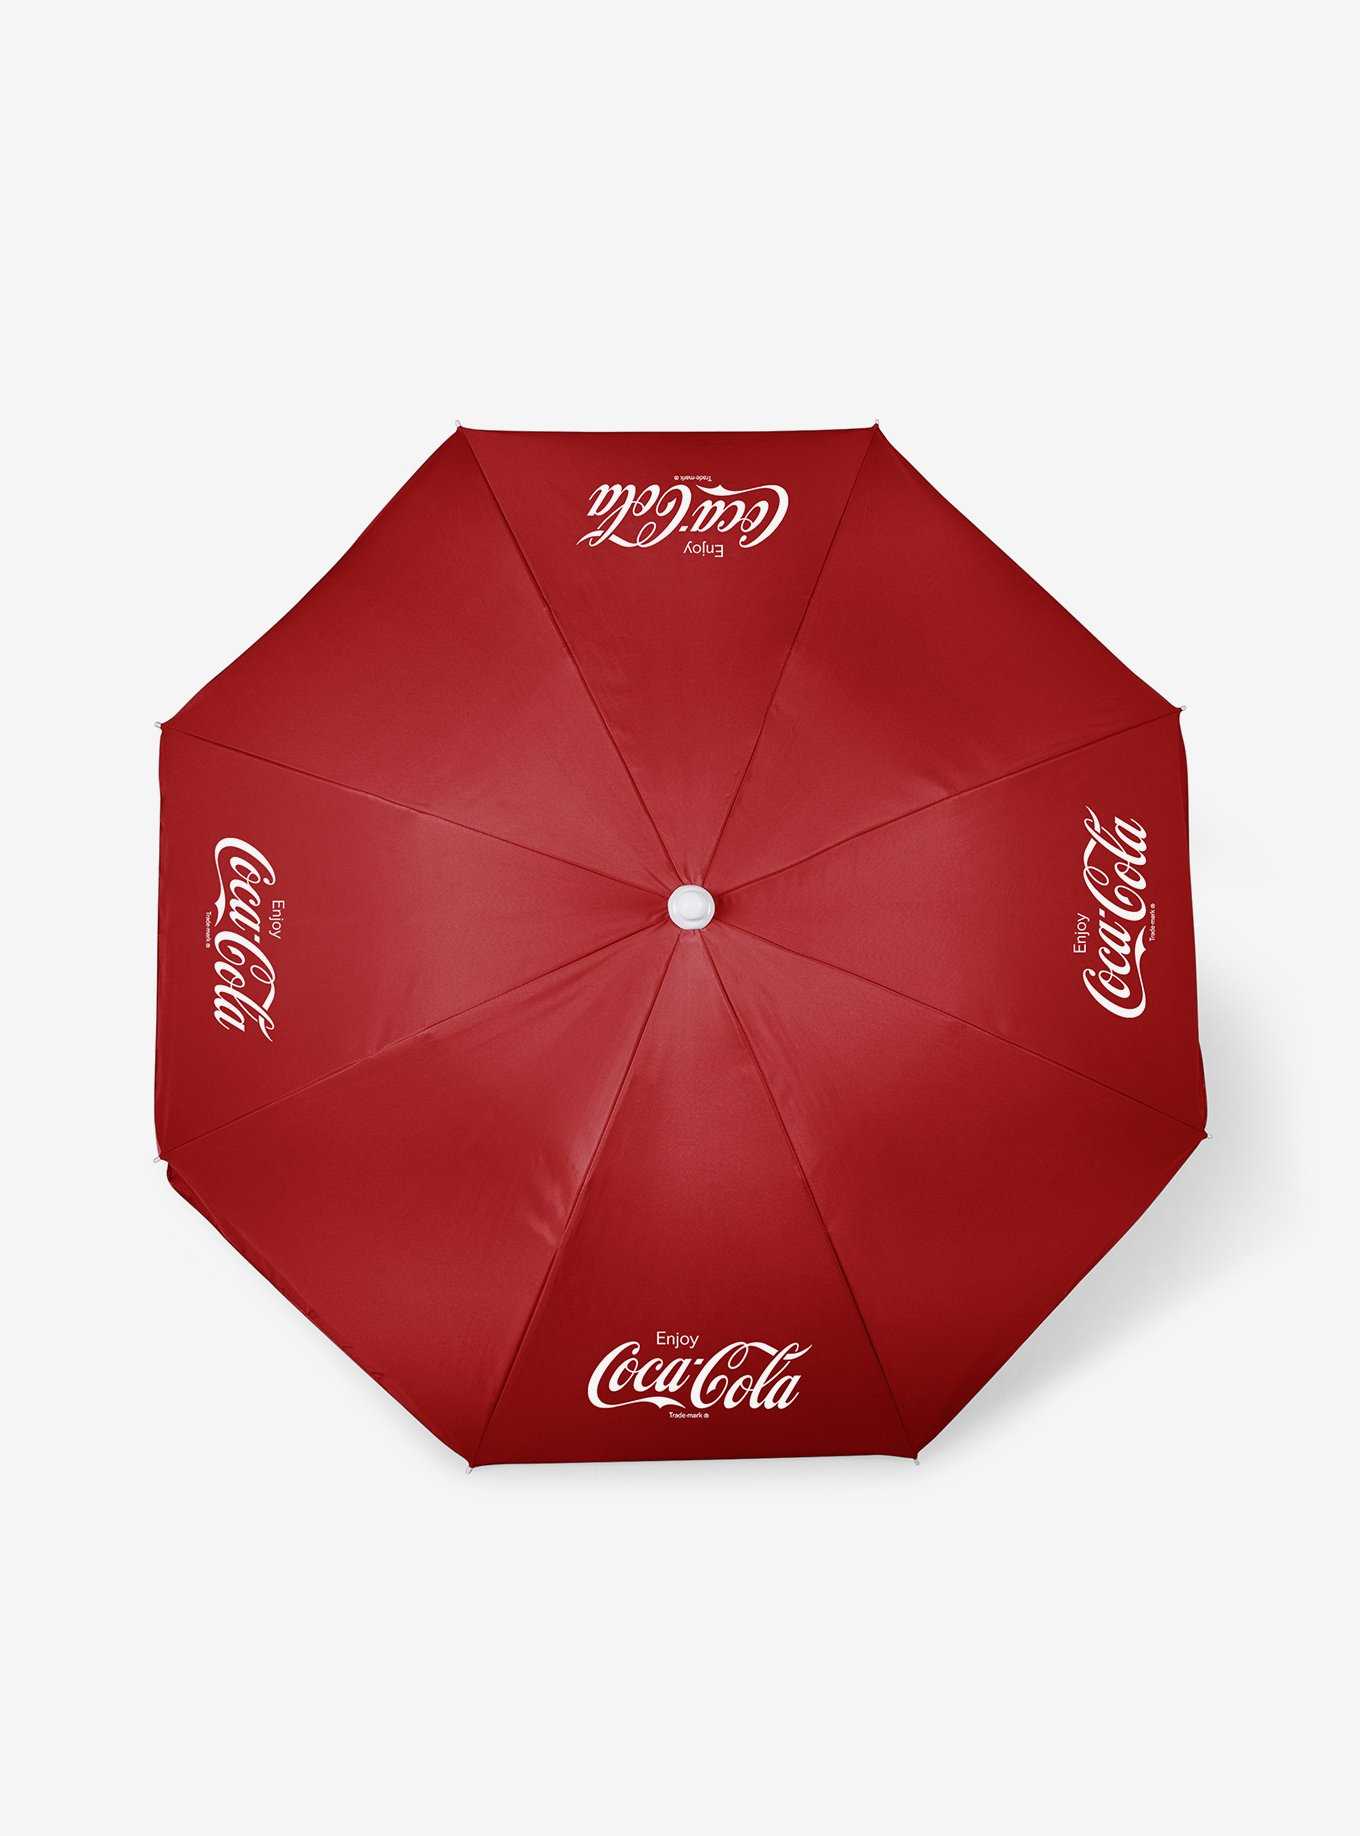 Coke Coca-Cola Enjoy Coca-Cola Beach Umbrella, , hi-res